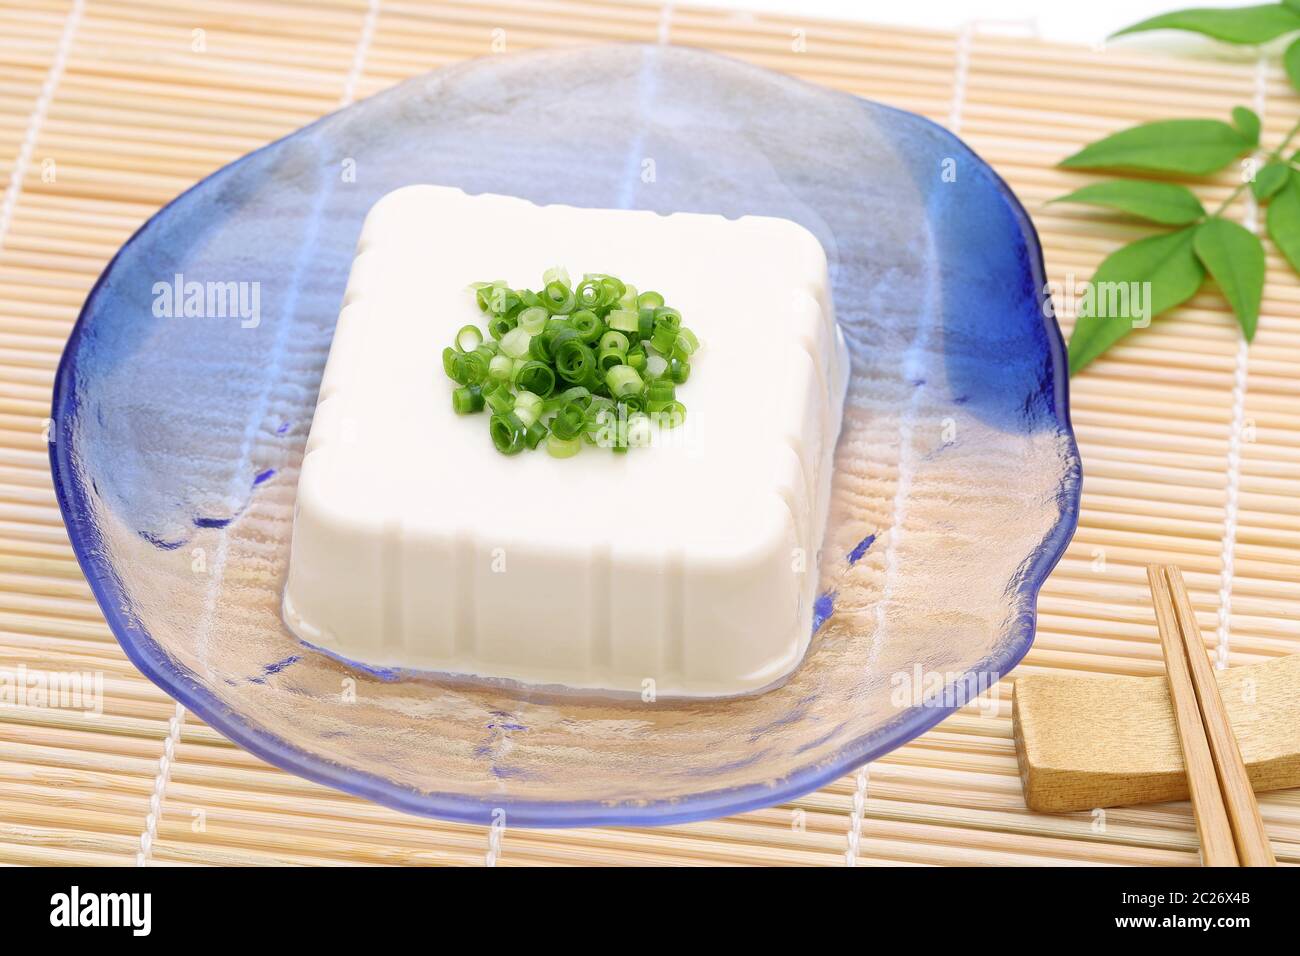 Cuisine japonaise, tofu froid et doux japonais dans une assiette en verre sur la table à manger Banque D'Images